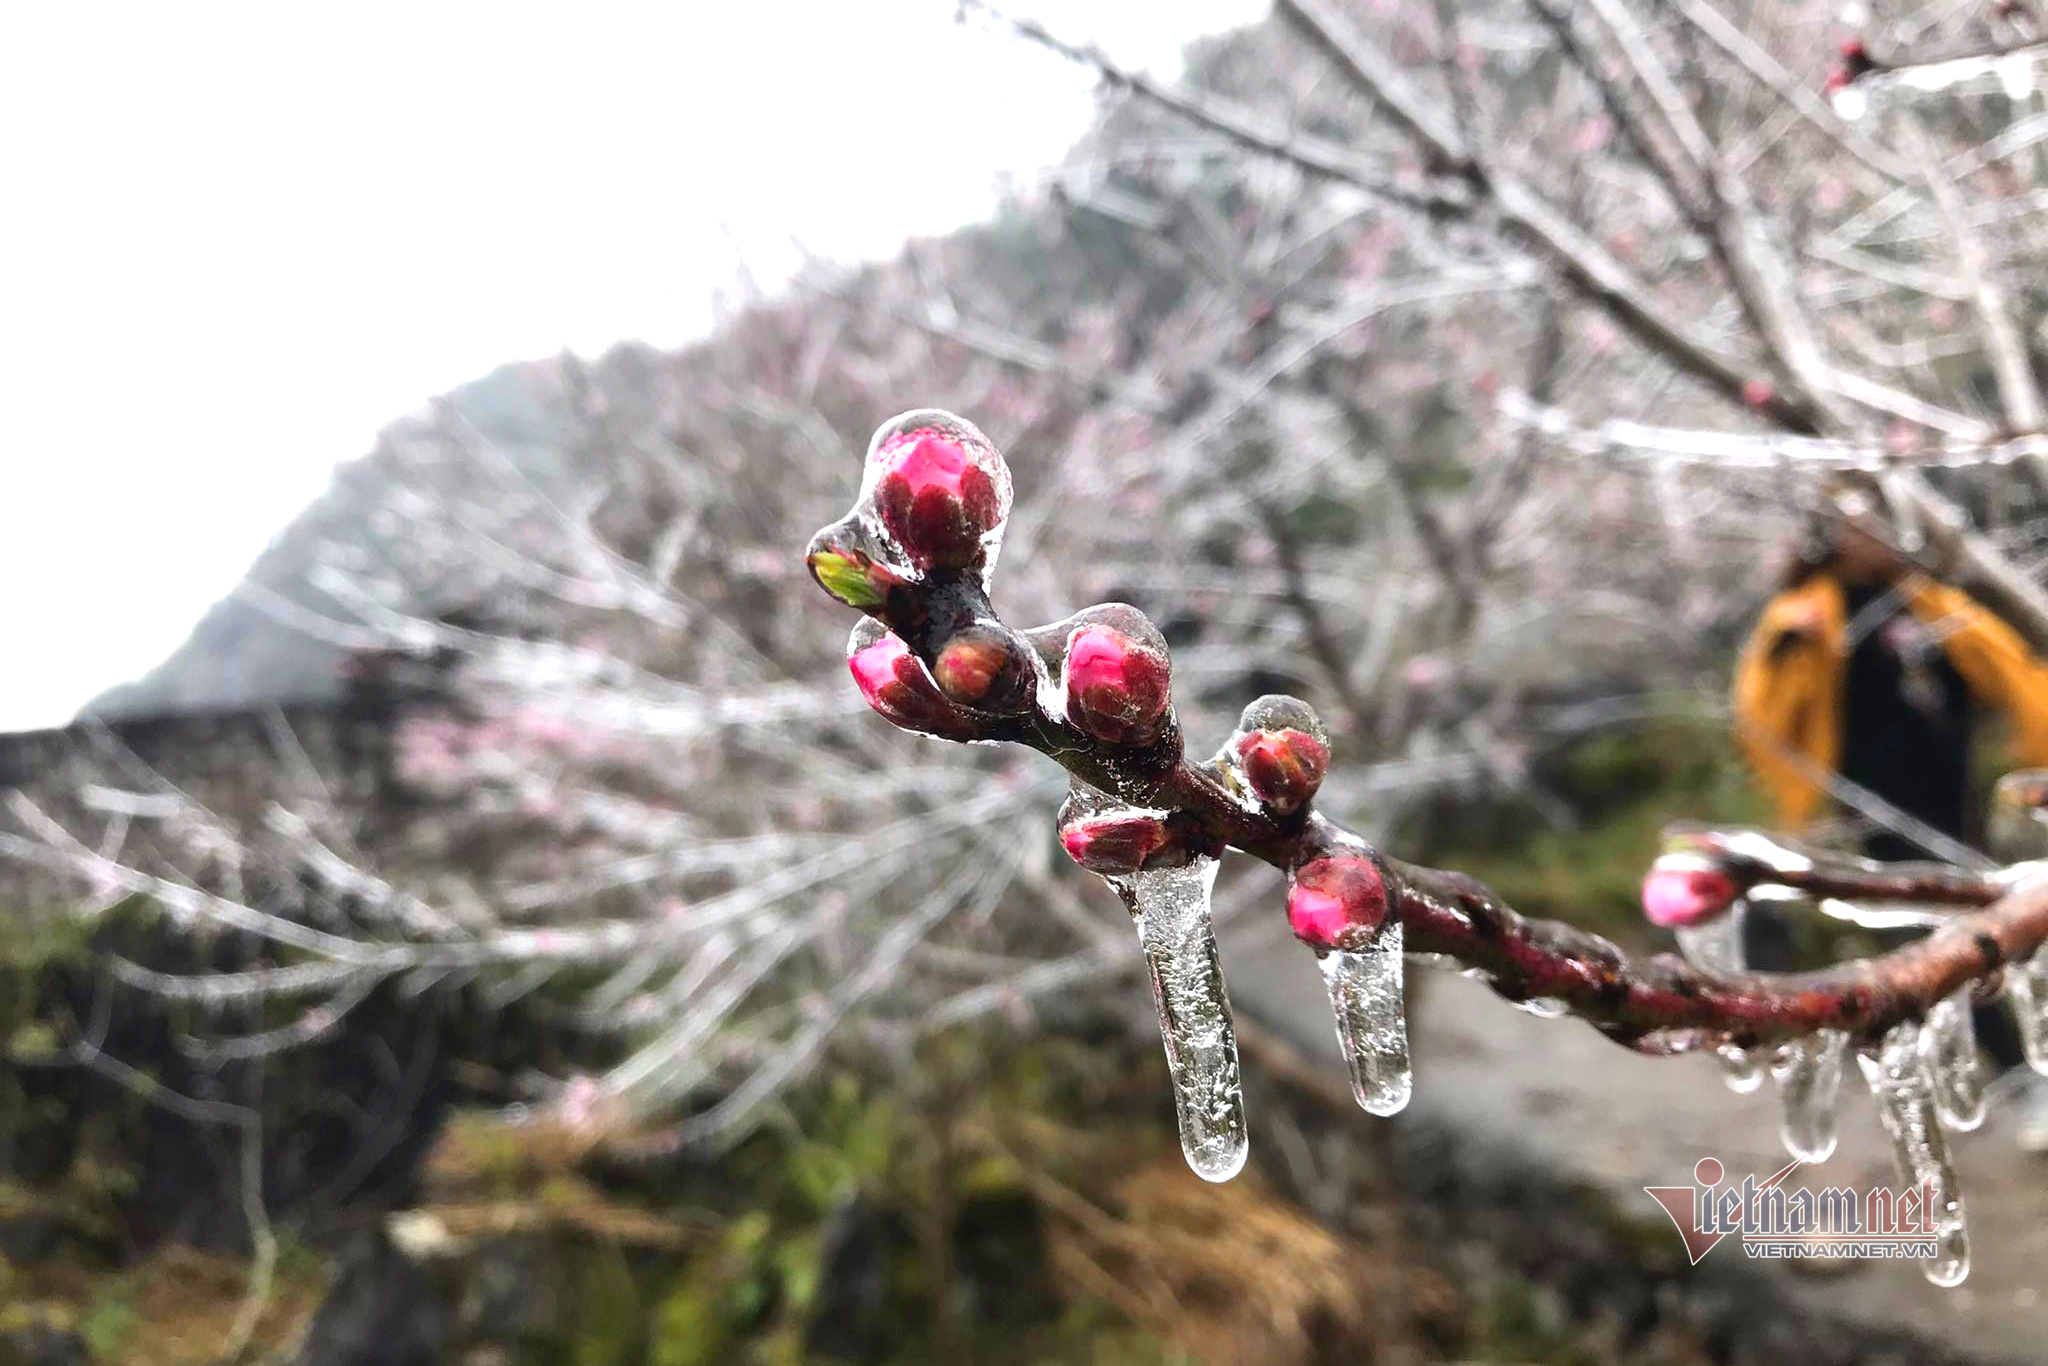 Âm 1 độ, du khách đổ xô lên ngắm hoa đào đóng băng ở Hà Giang-5